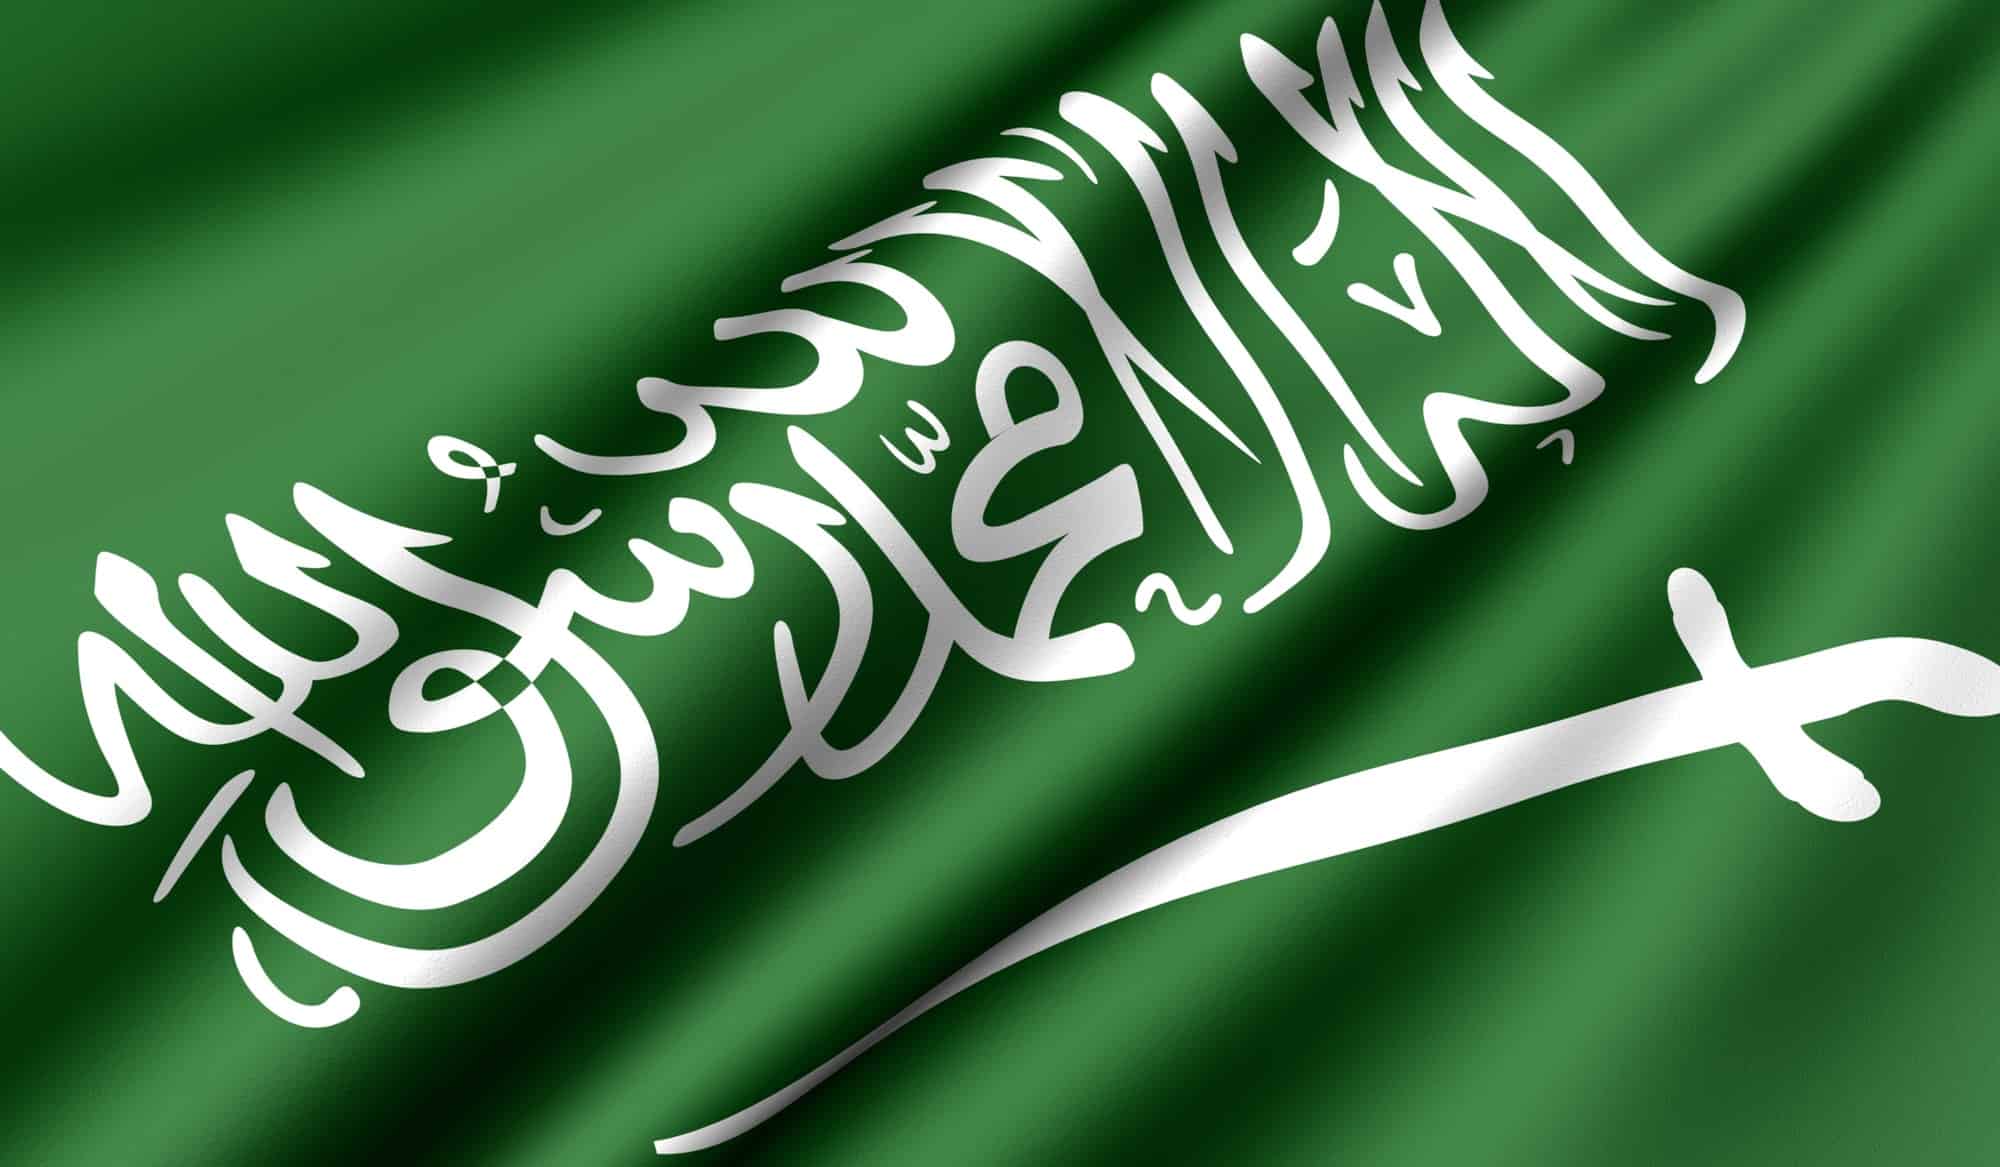 نوع التماثل الموجود في علم المملكة العربية السعودية الموقع المثالي